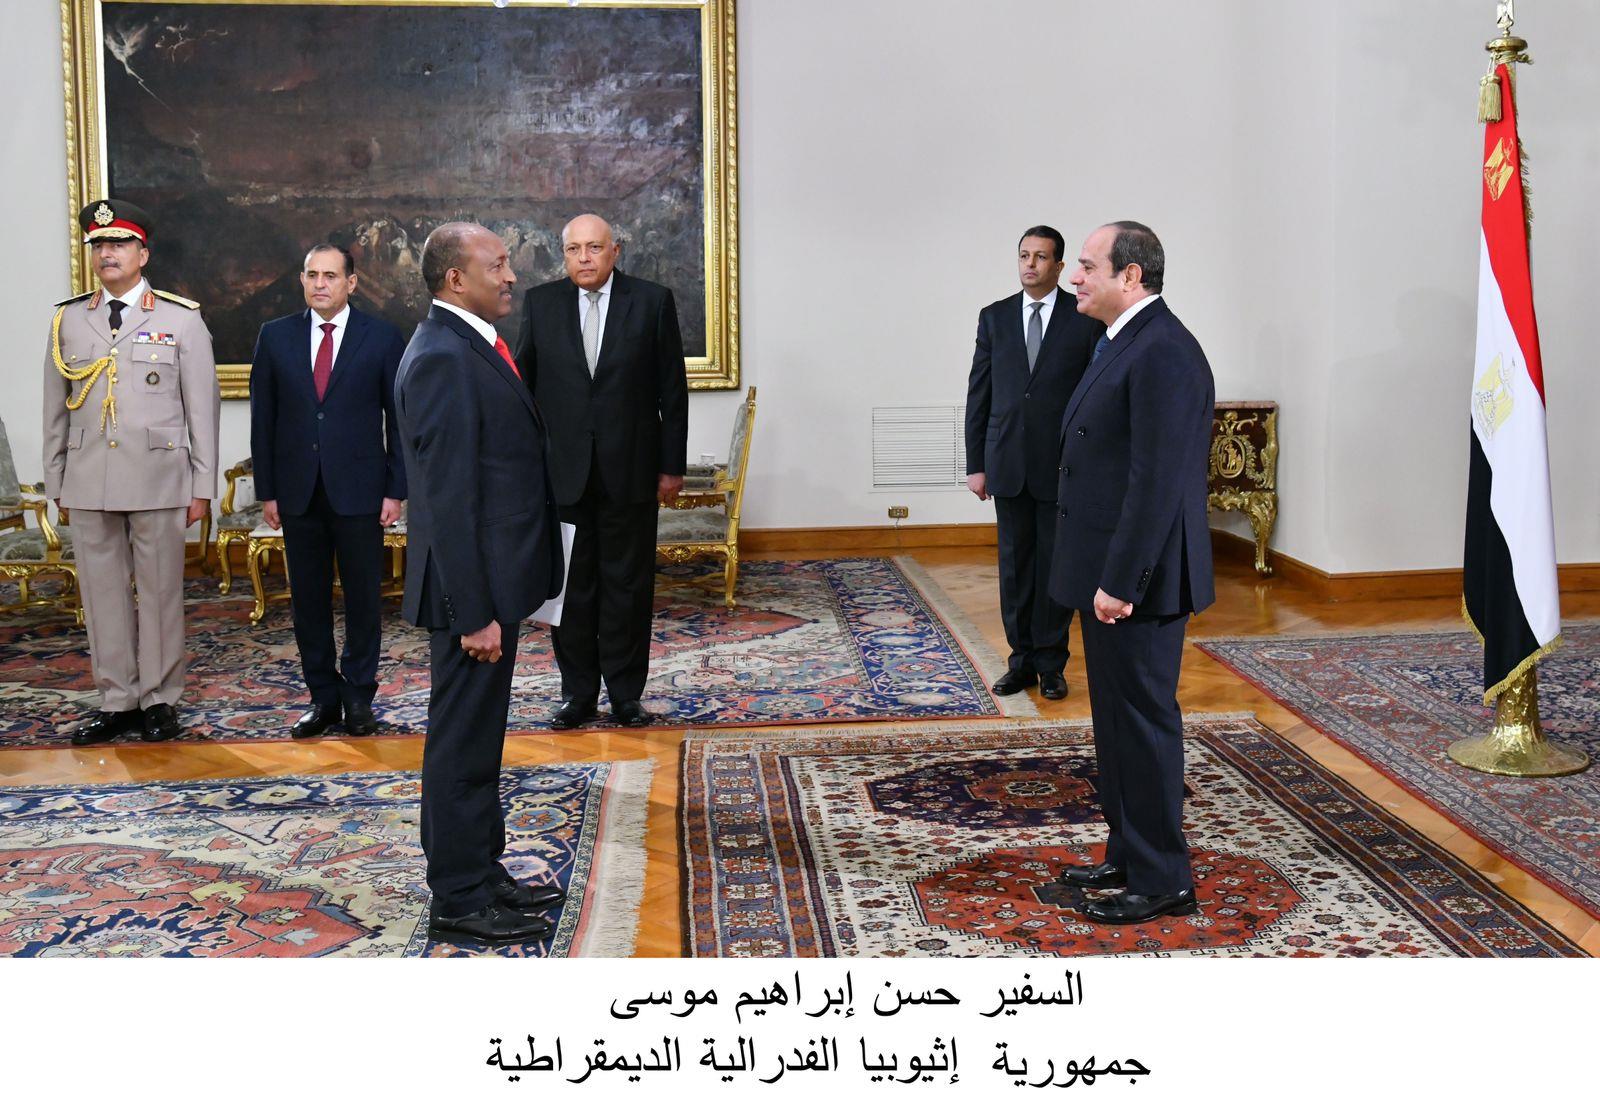 الرئيس السيسي يتسلم أوراق اعتماد 13 سفيراً جديداً